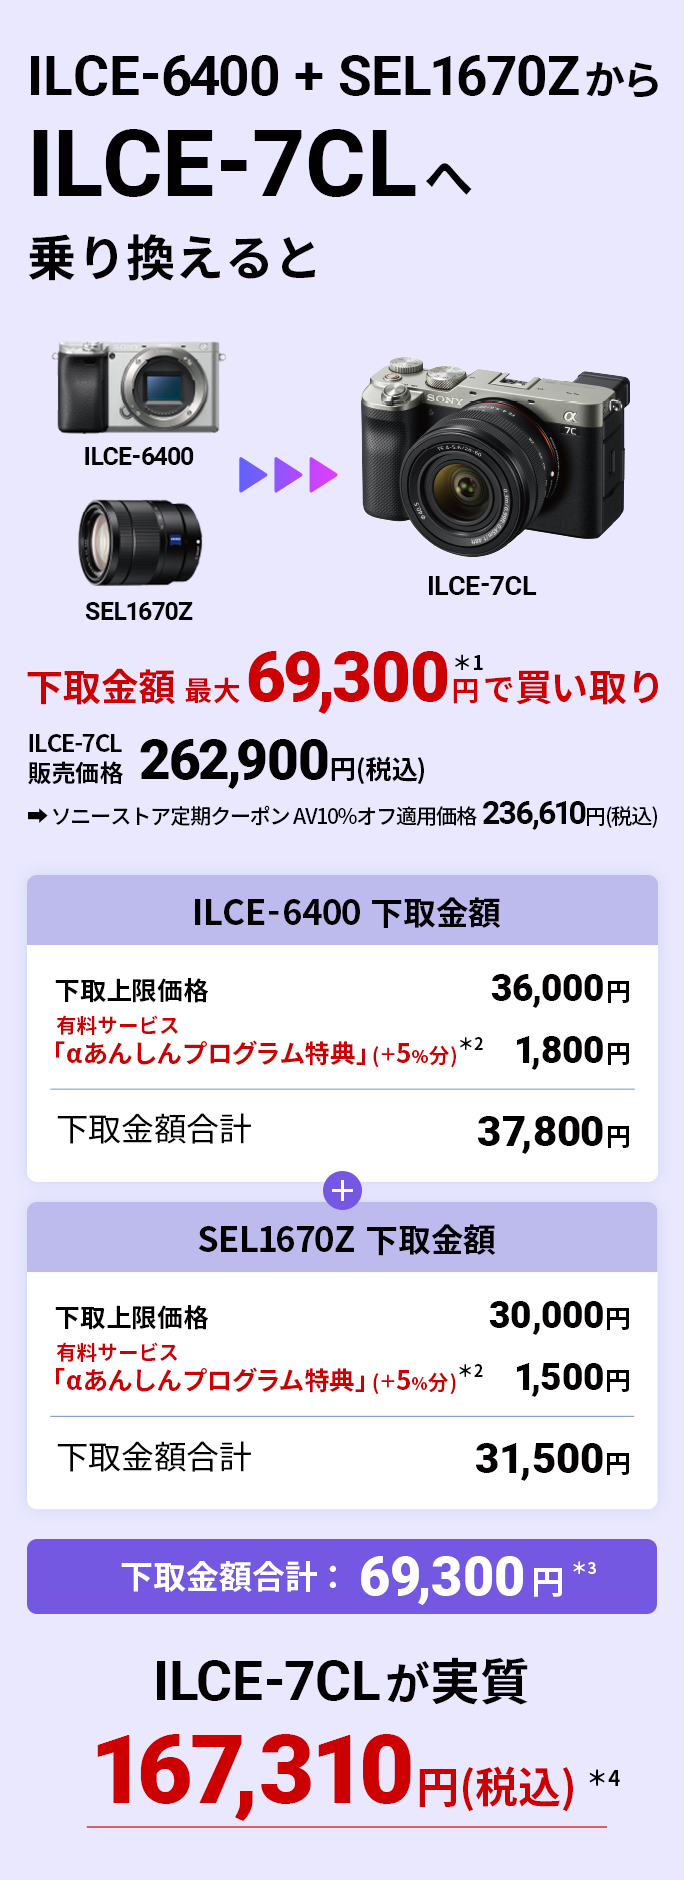 ILCE-6400 + SEL1670ZILCE-7CL֏芷 ző69,300~Ŕ ILCE-7CL167,310~(ō)